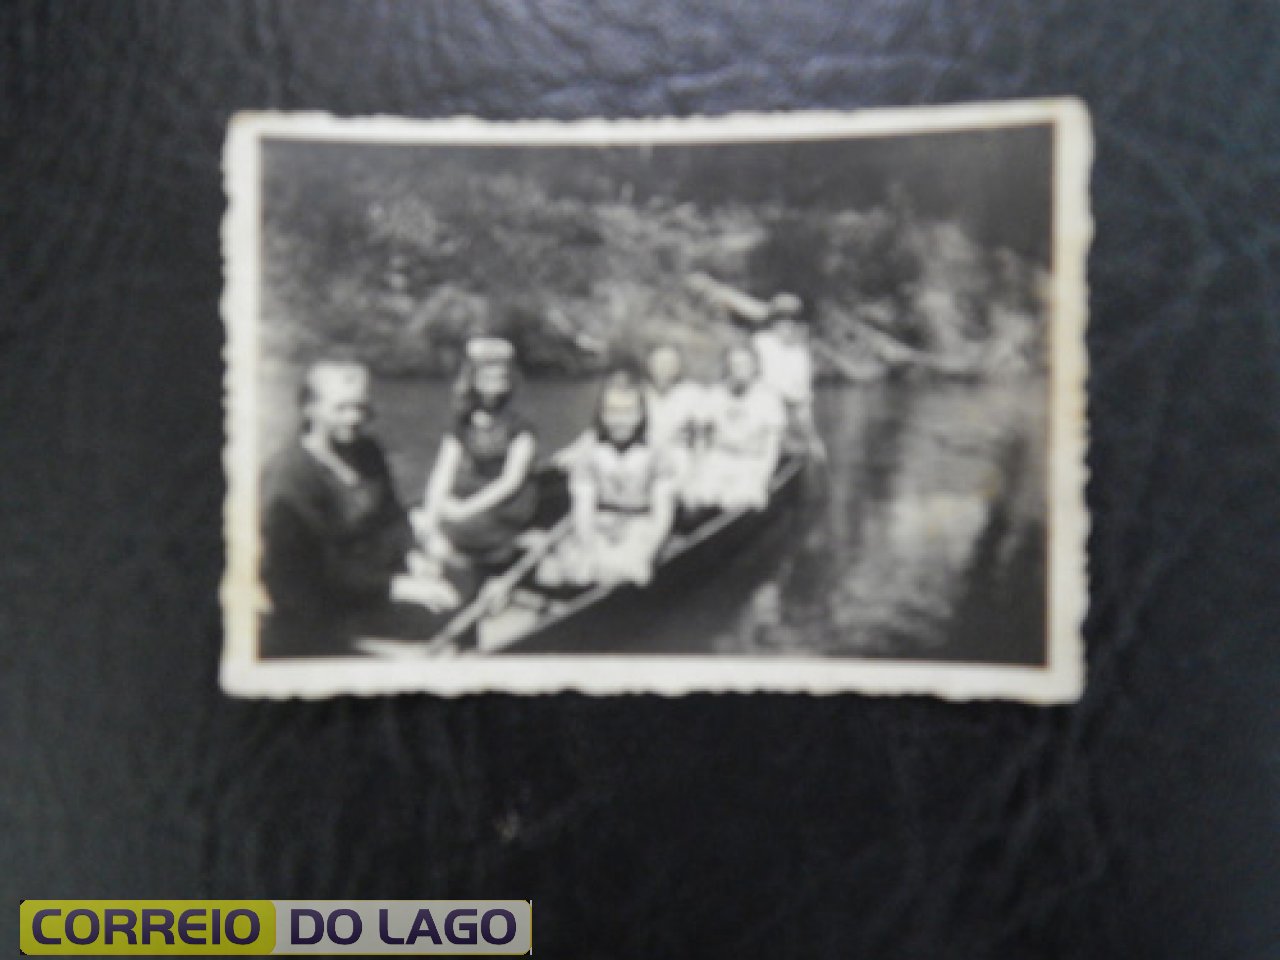 Passeio no Rio São Francisco Década de 1960.